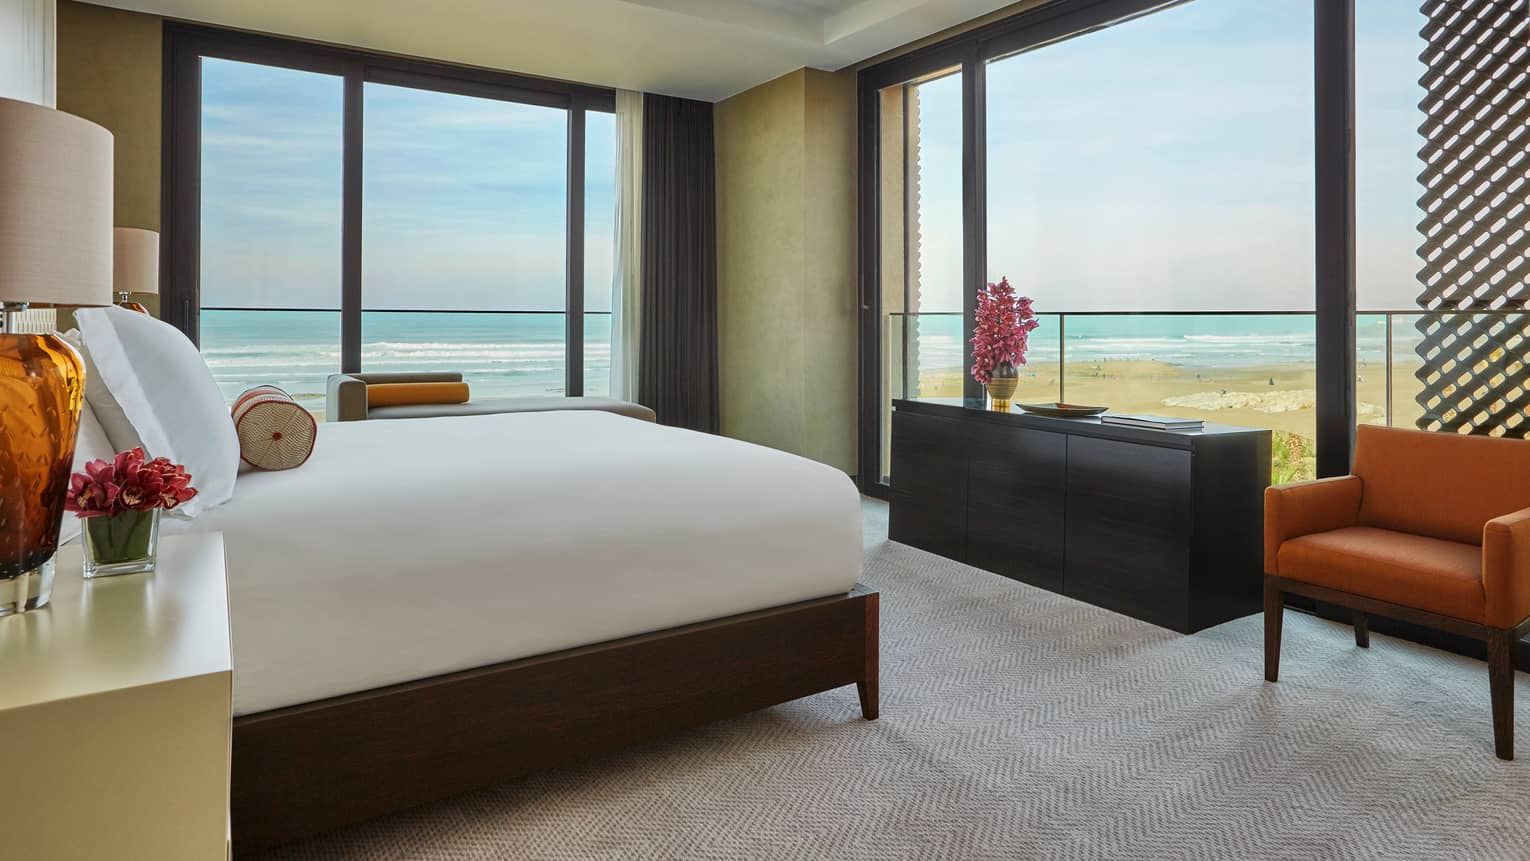 Imperial Suite Ocean room with bed, corner windows with Atlantic Ocean views